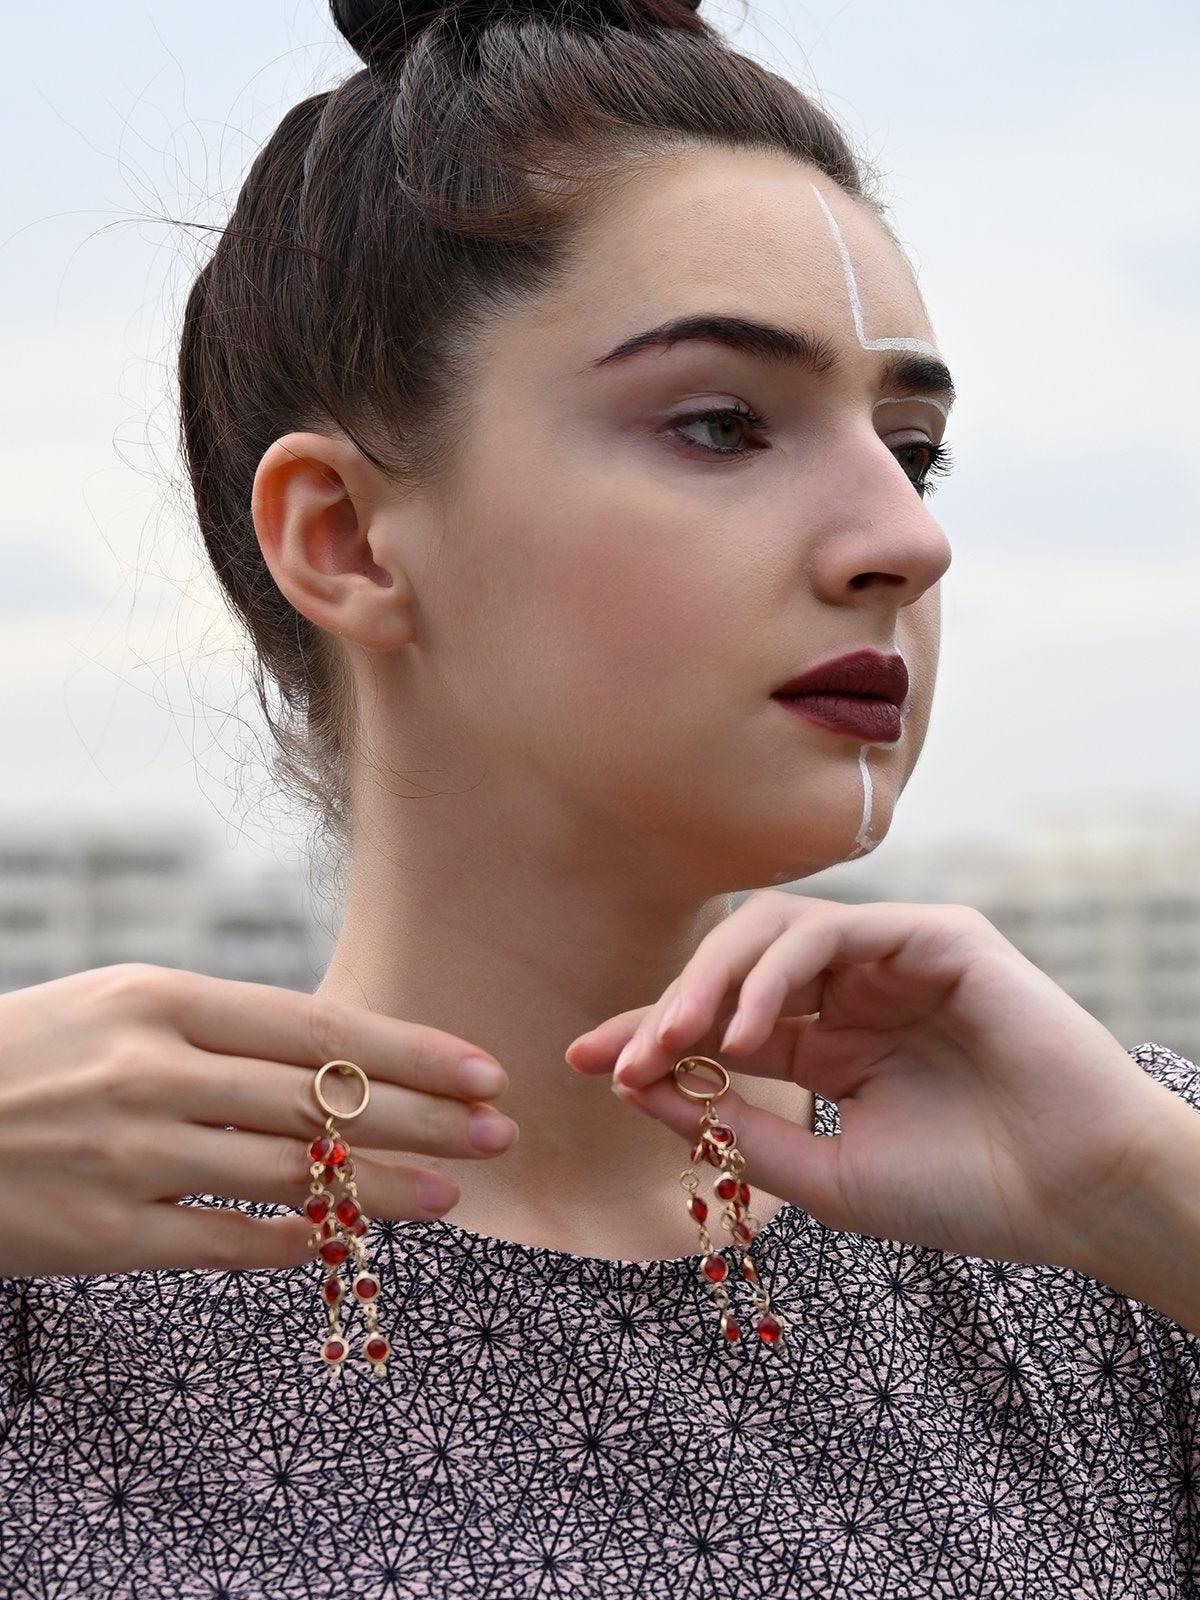 Women's Spill Down Red Crystal Earrings - Odette